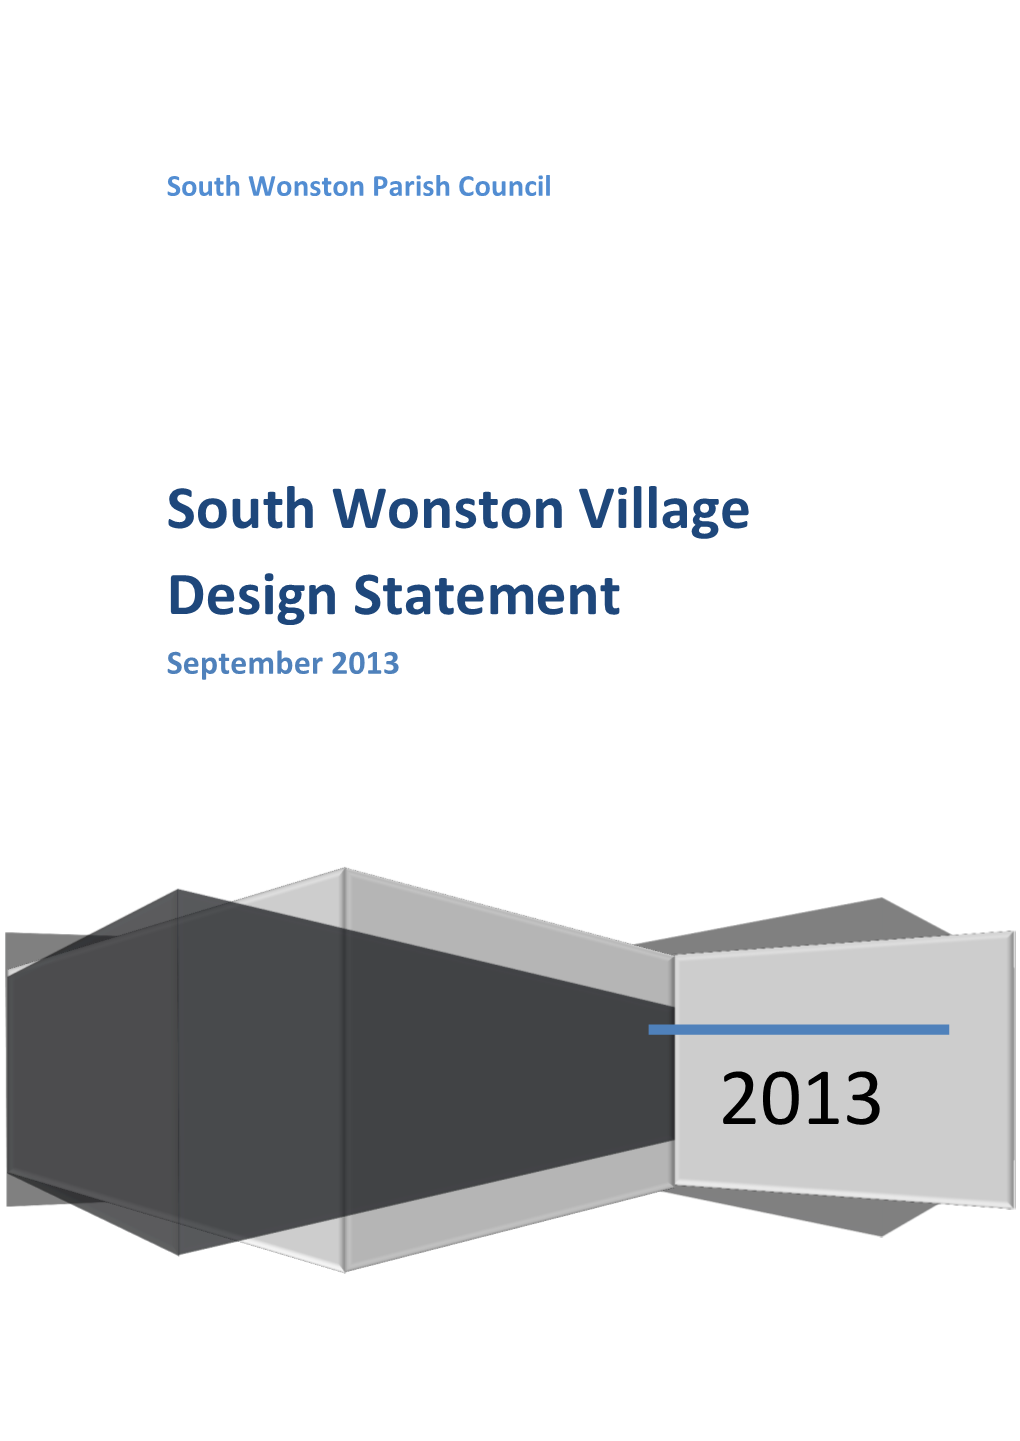 South Wonston Village Design Statement